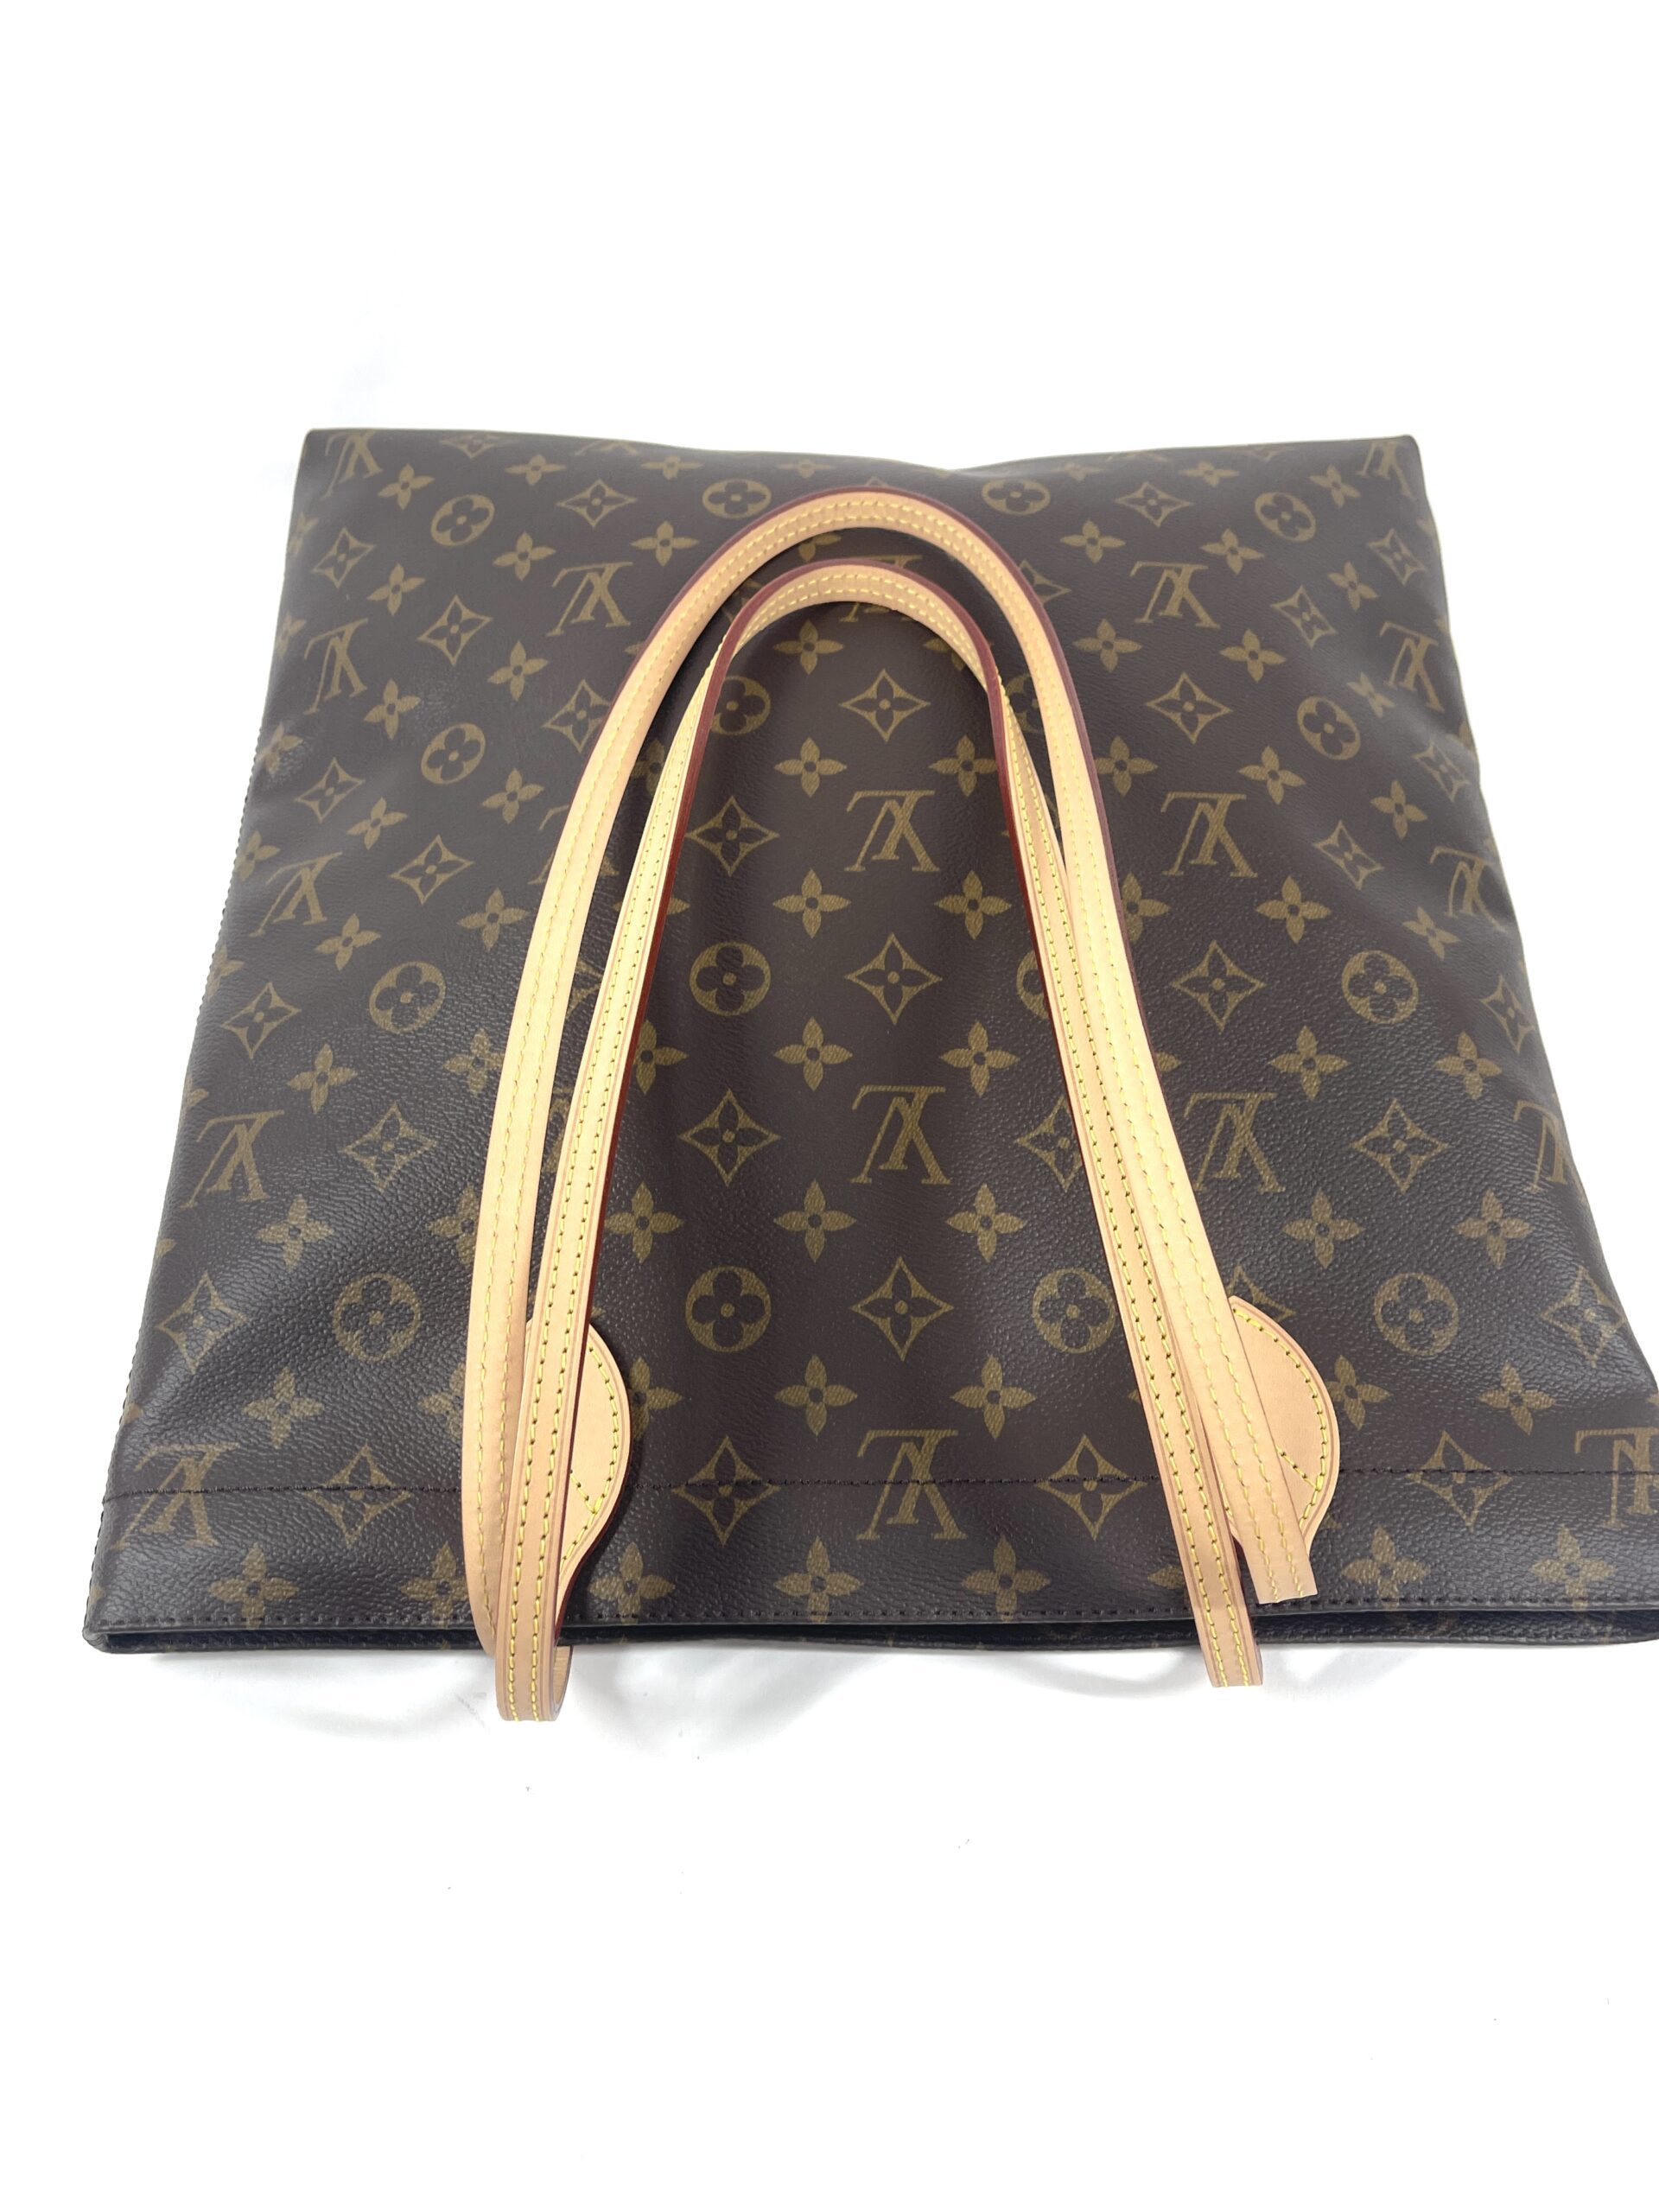 Louis Vuitton Carry It Tote Shoulder Handbag New